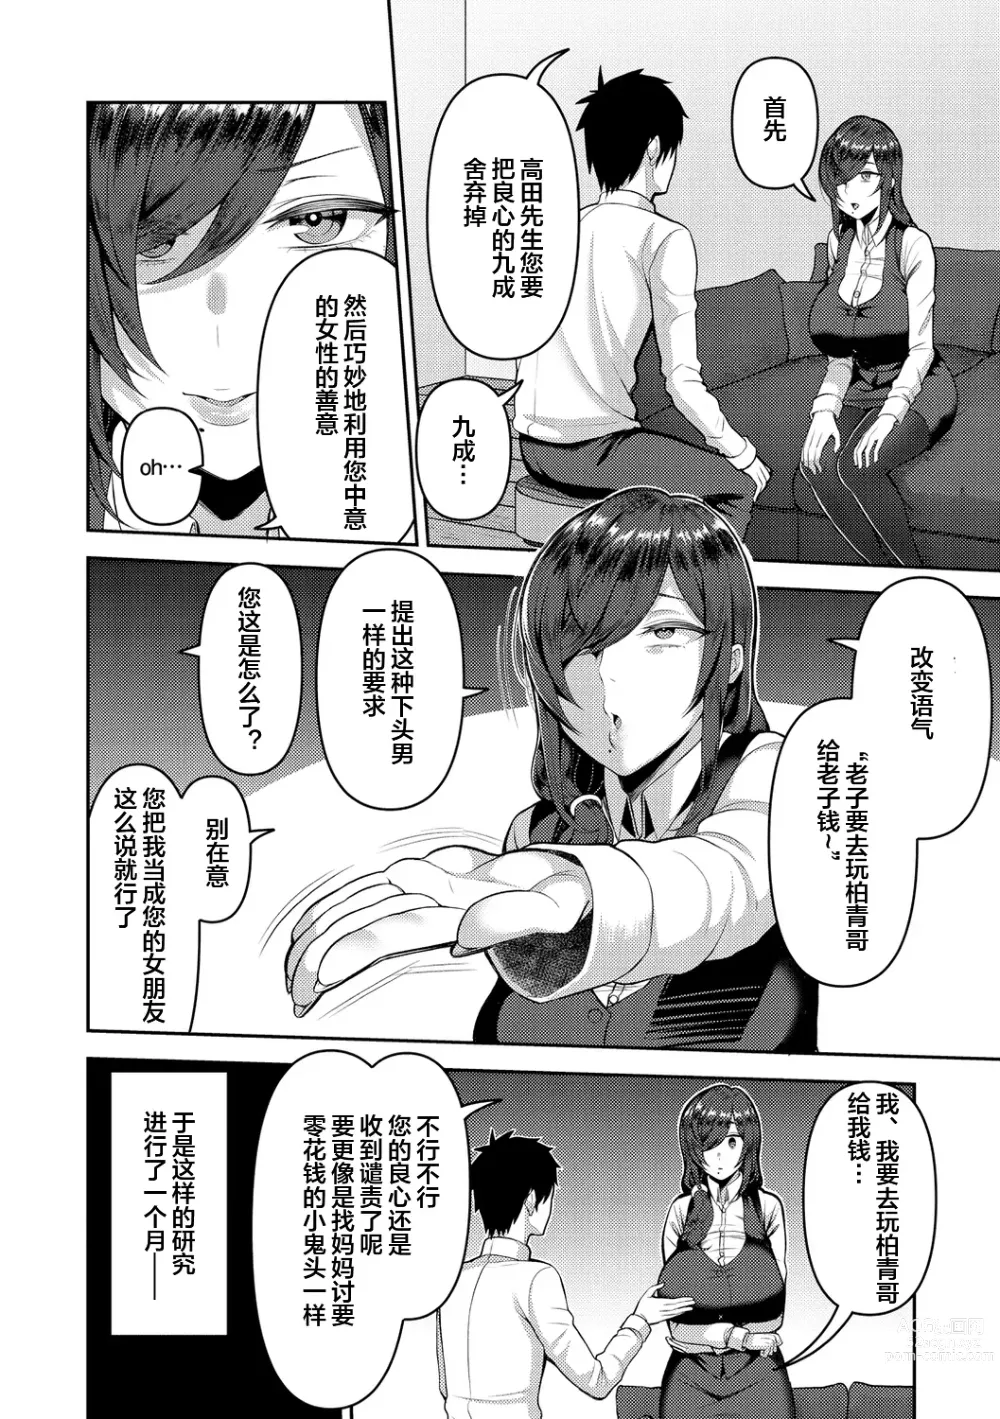 Page 28 of manga Amaete Hoshii no - I want you to spoil me